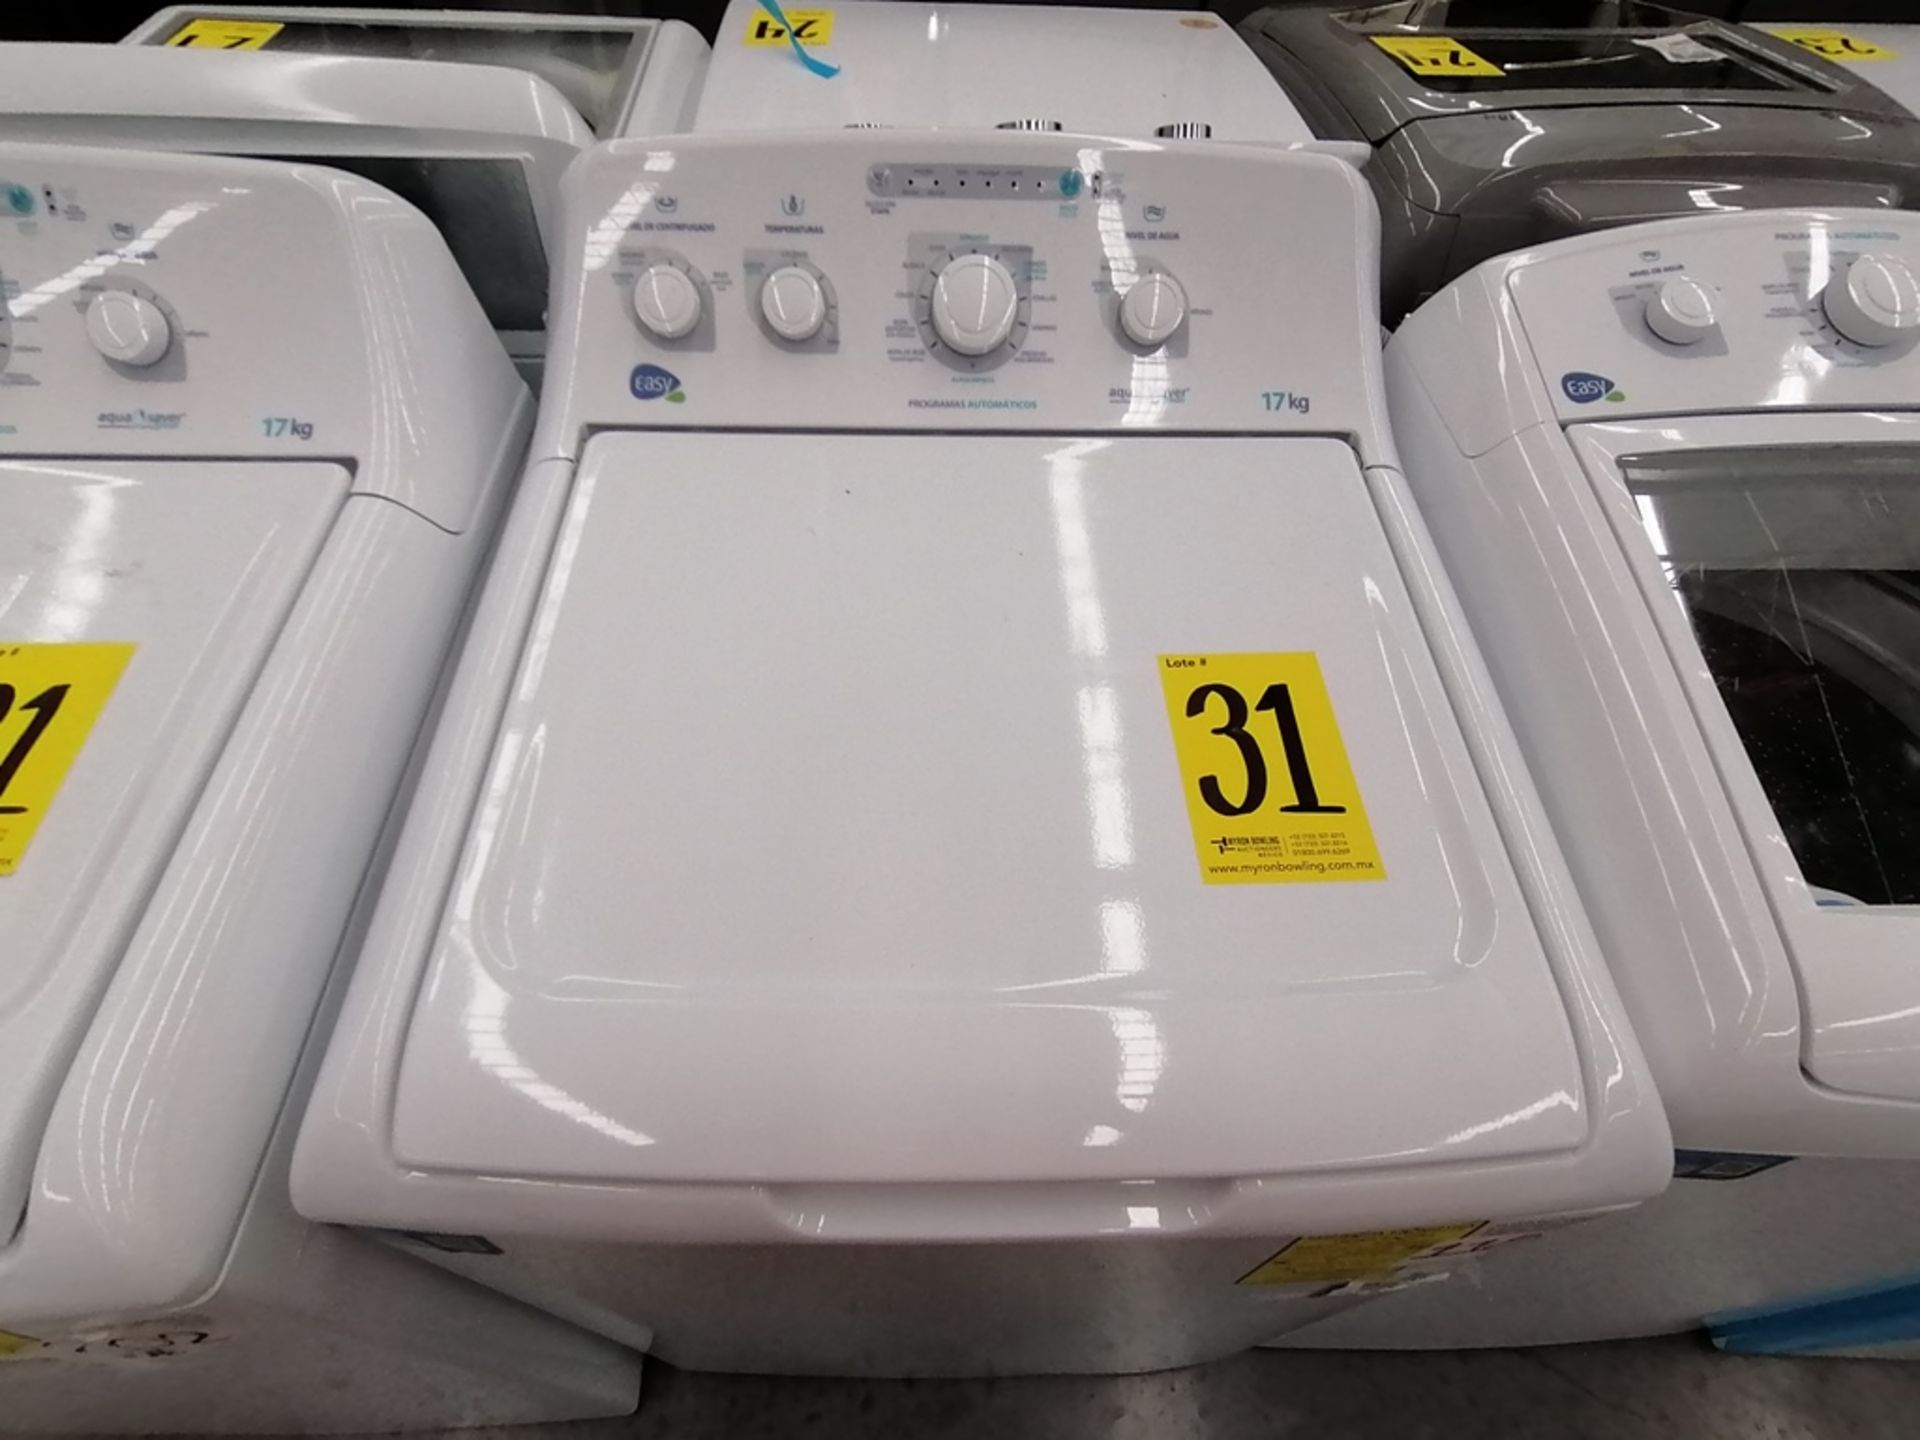 Lote de 3 lavadoras contiene: 1 Lavadora de 17KG, Marca Easy, Modelo LEA77114CBAB03, Serie 2105S522 - Image 8 of 30